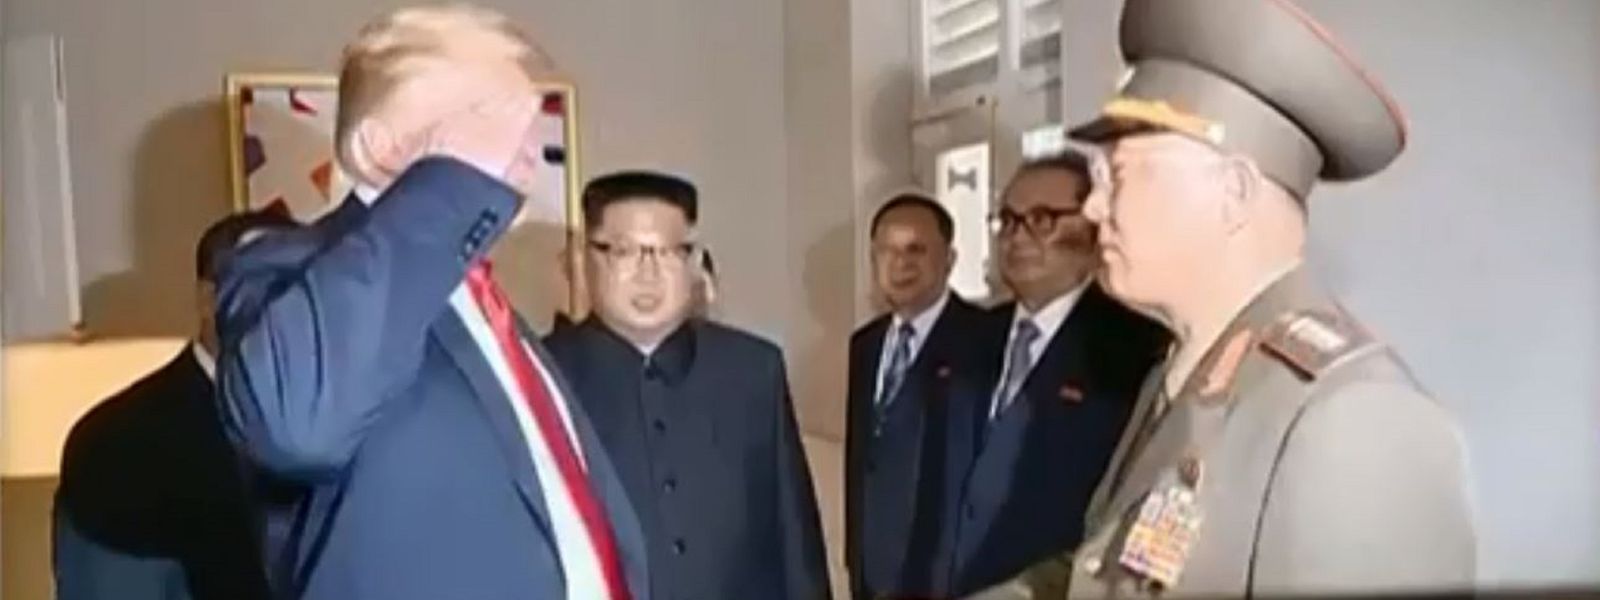 Moment der Unachtsamkeit oder Kalkül? Donald Trump salutiert vor einem nordkoreanischen General.